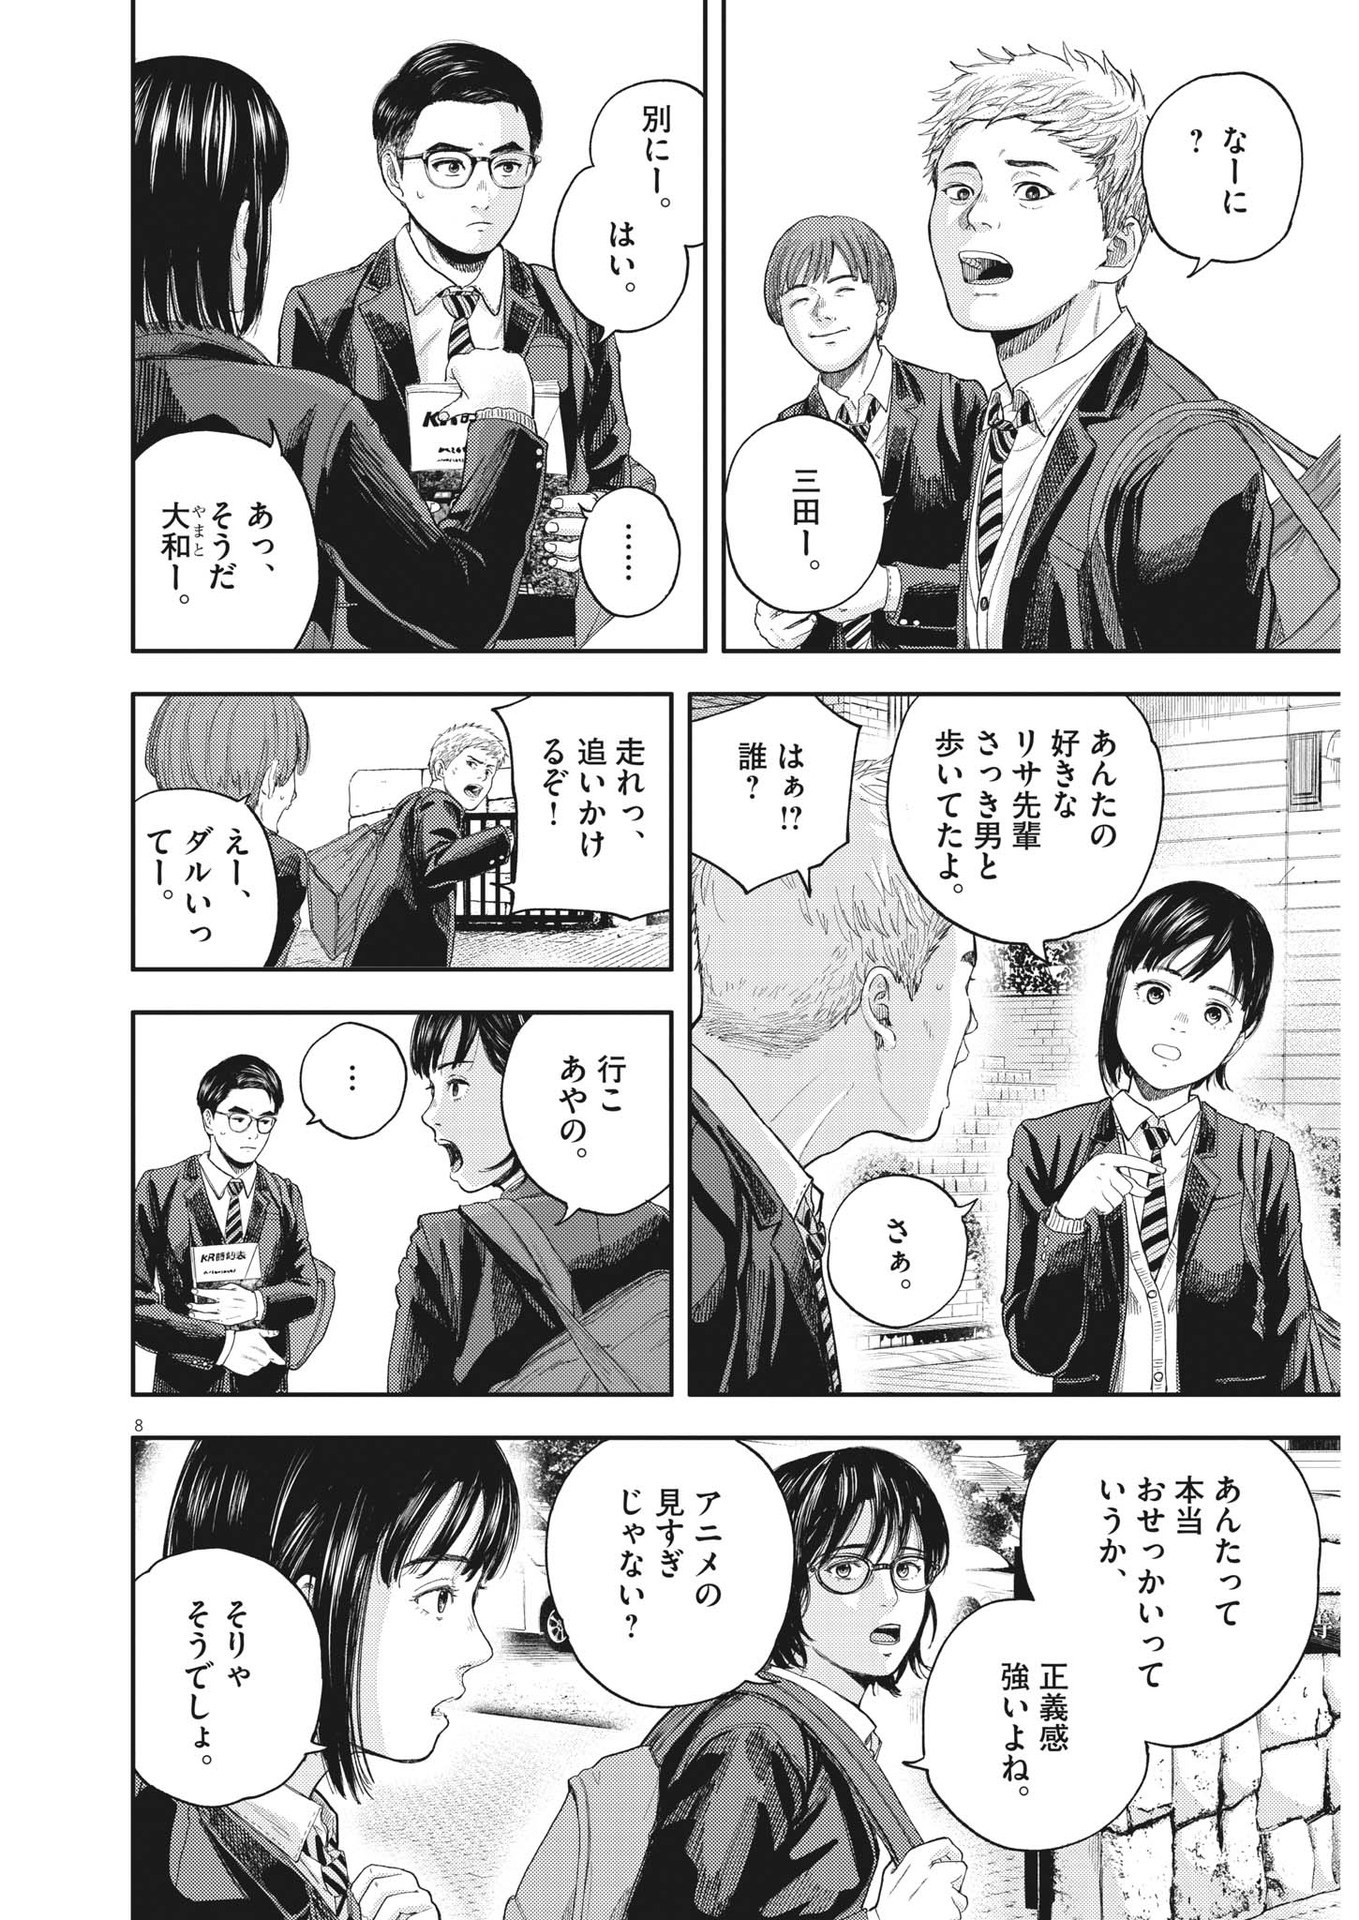 Yumenashi-sensei no Shinroshidou - Chapter 1 - Page 8